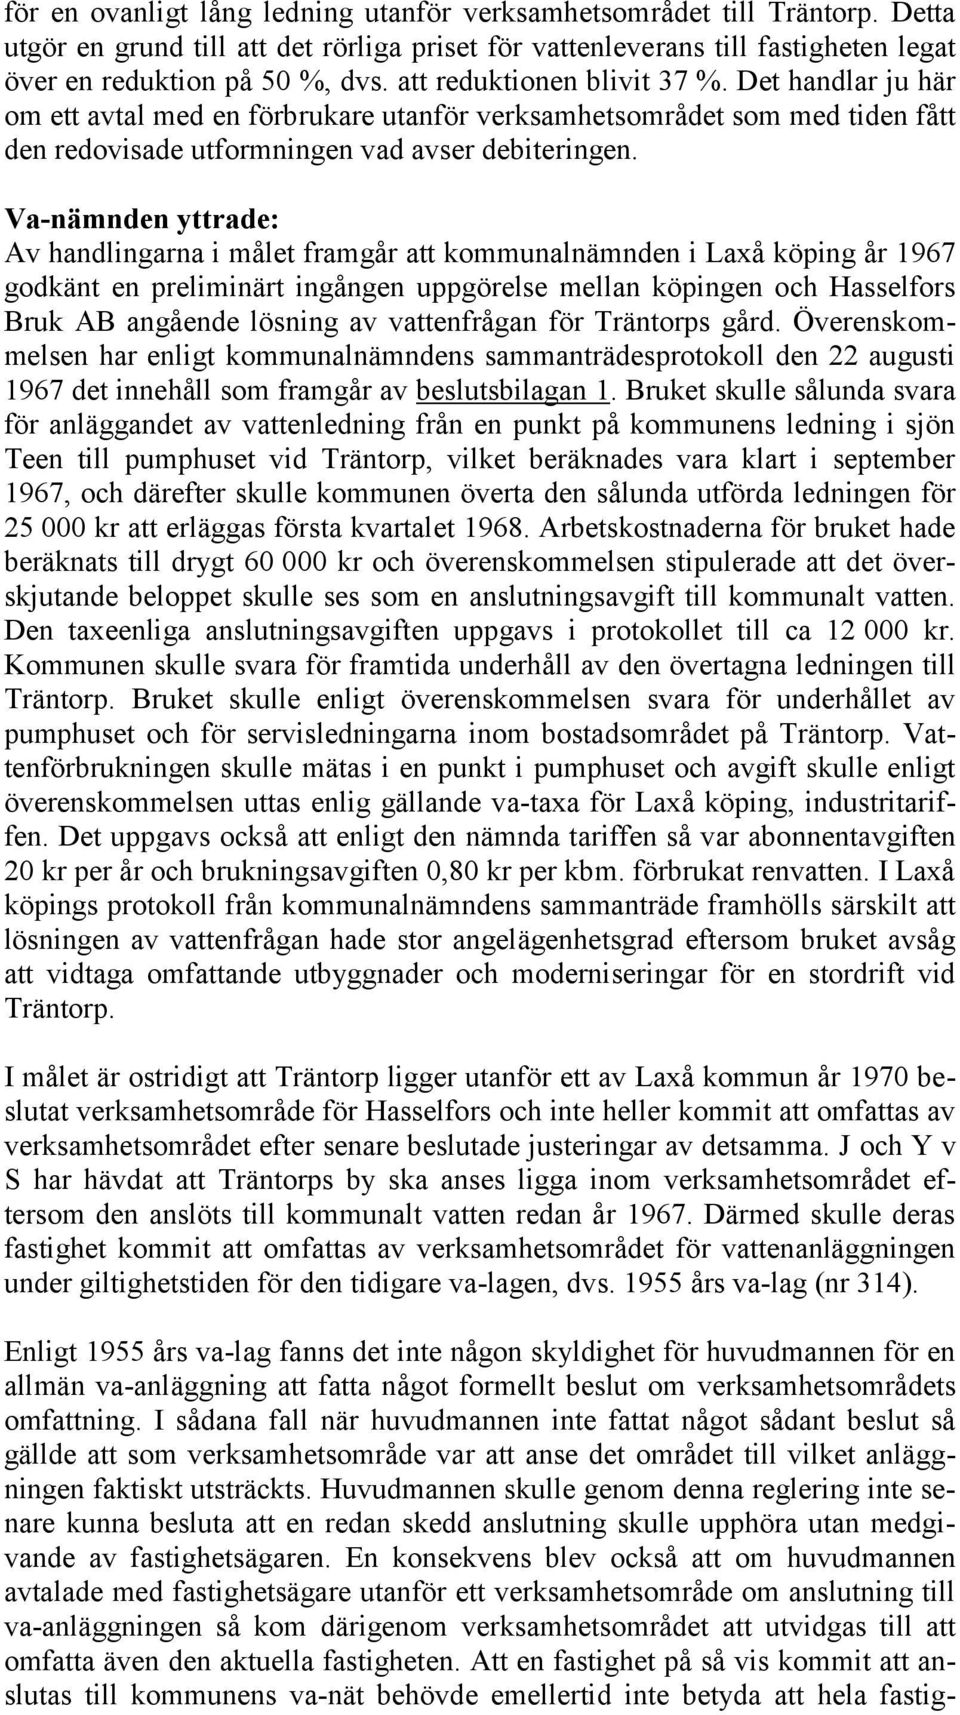 Va-nämnden yttrade: Av handlingarna i målet framgår att kommunalnämnden i Laxå köping år 1967 godkänt en preliminärt ingången uppgörelse mellan köpingen och Hasselfors Bruk AB angående lösning av